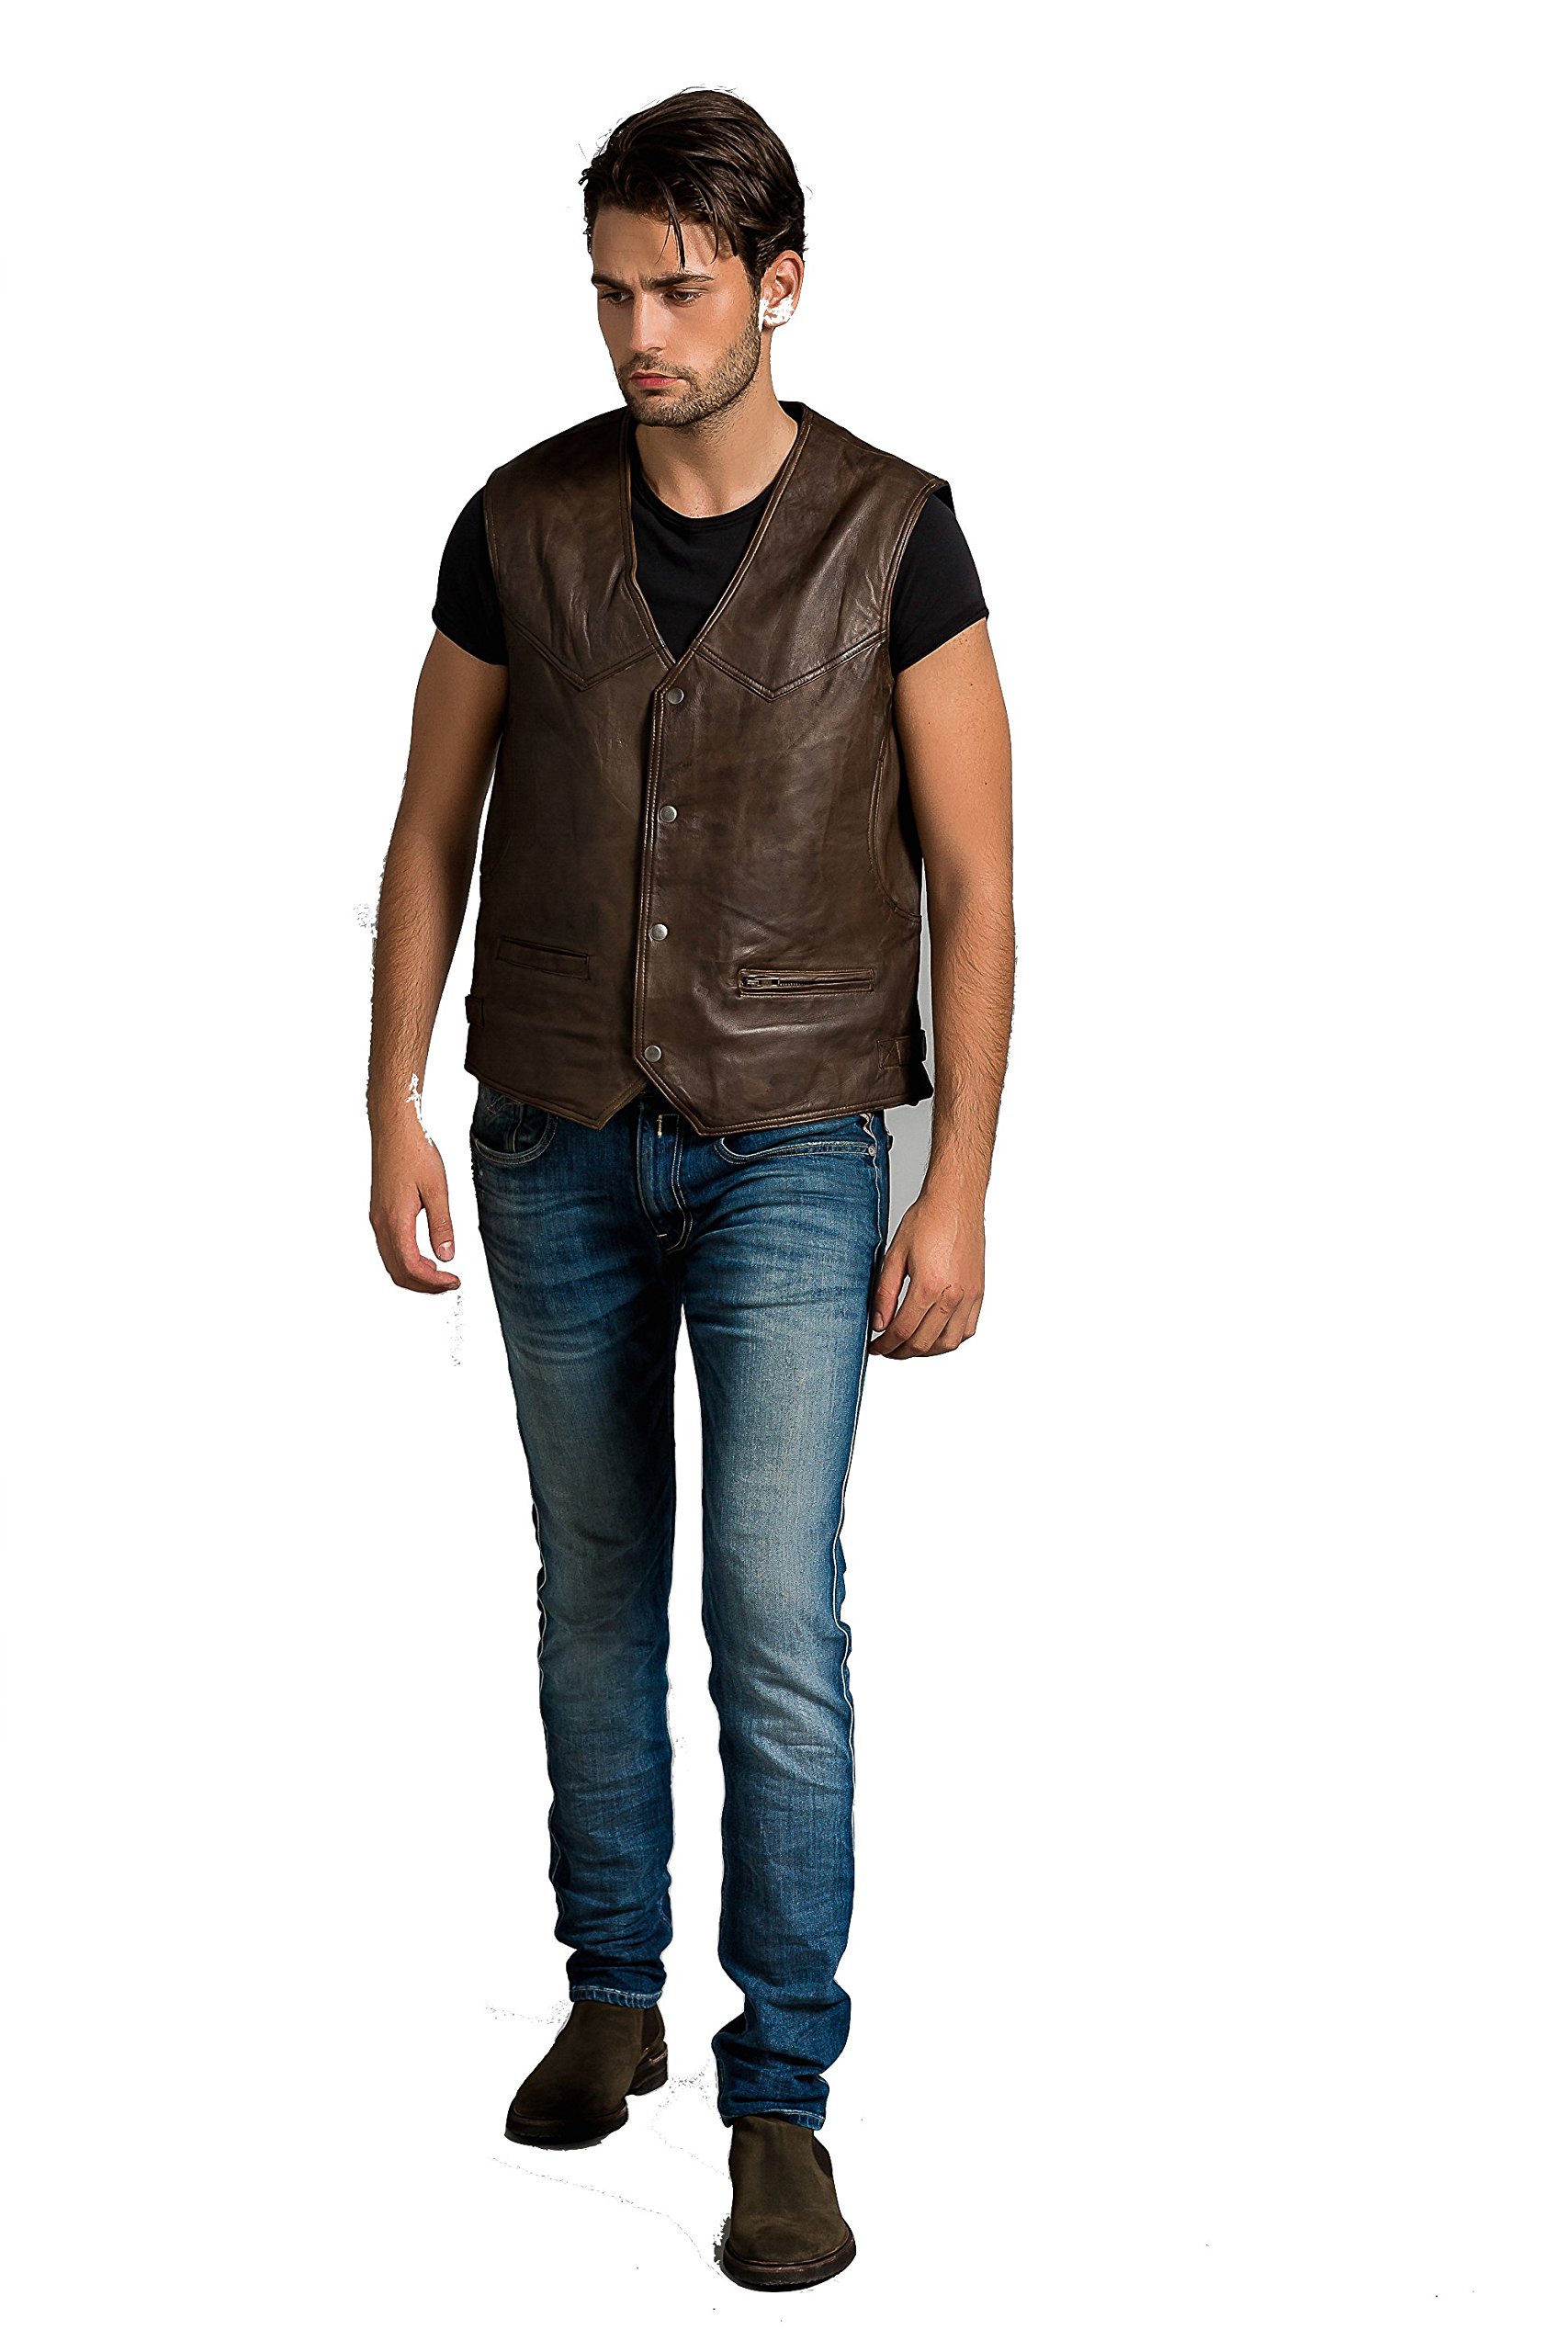 Billy Waistcoat, Ontorio Brown, Size 3XL von Urban Leather